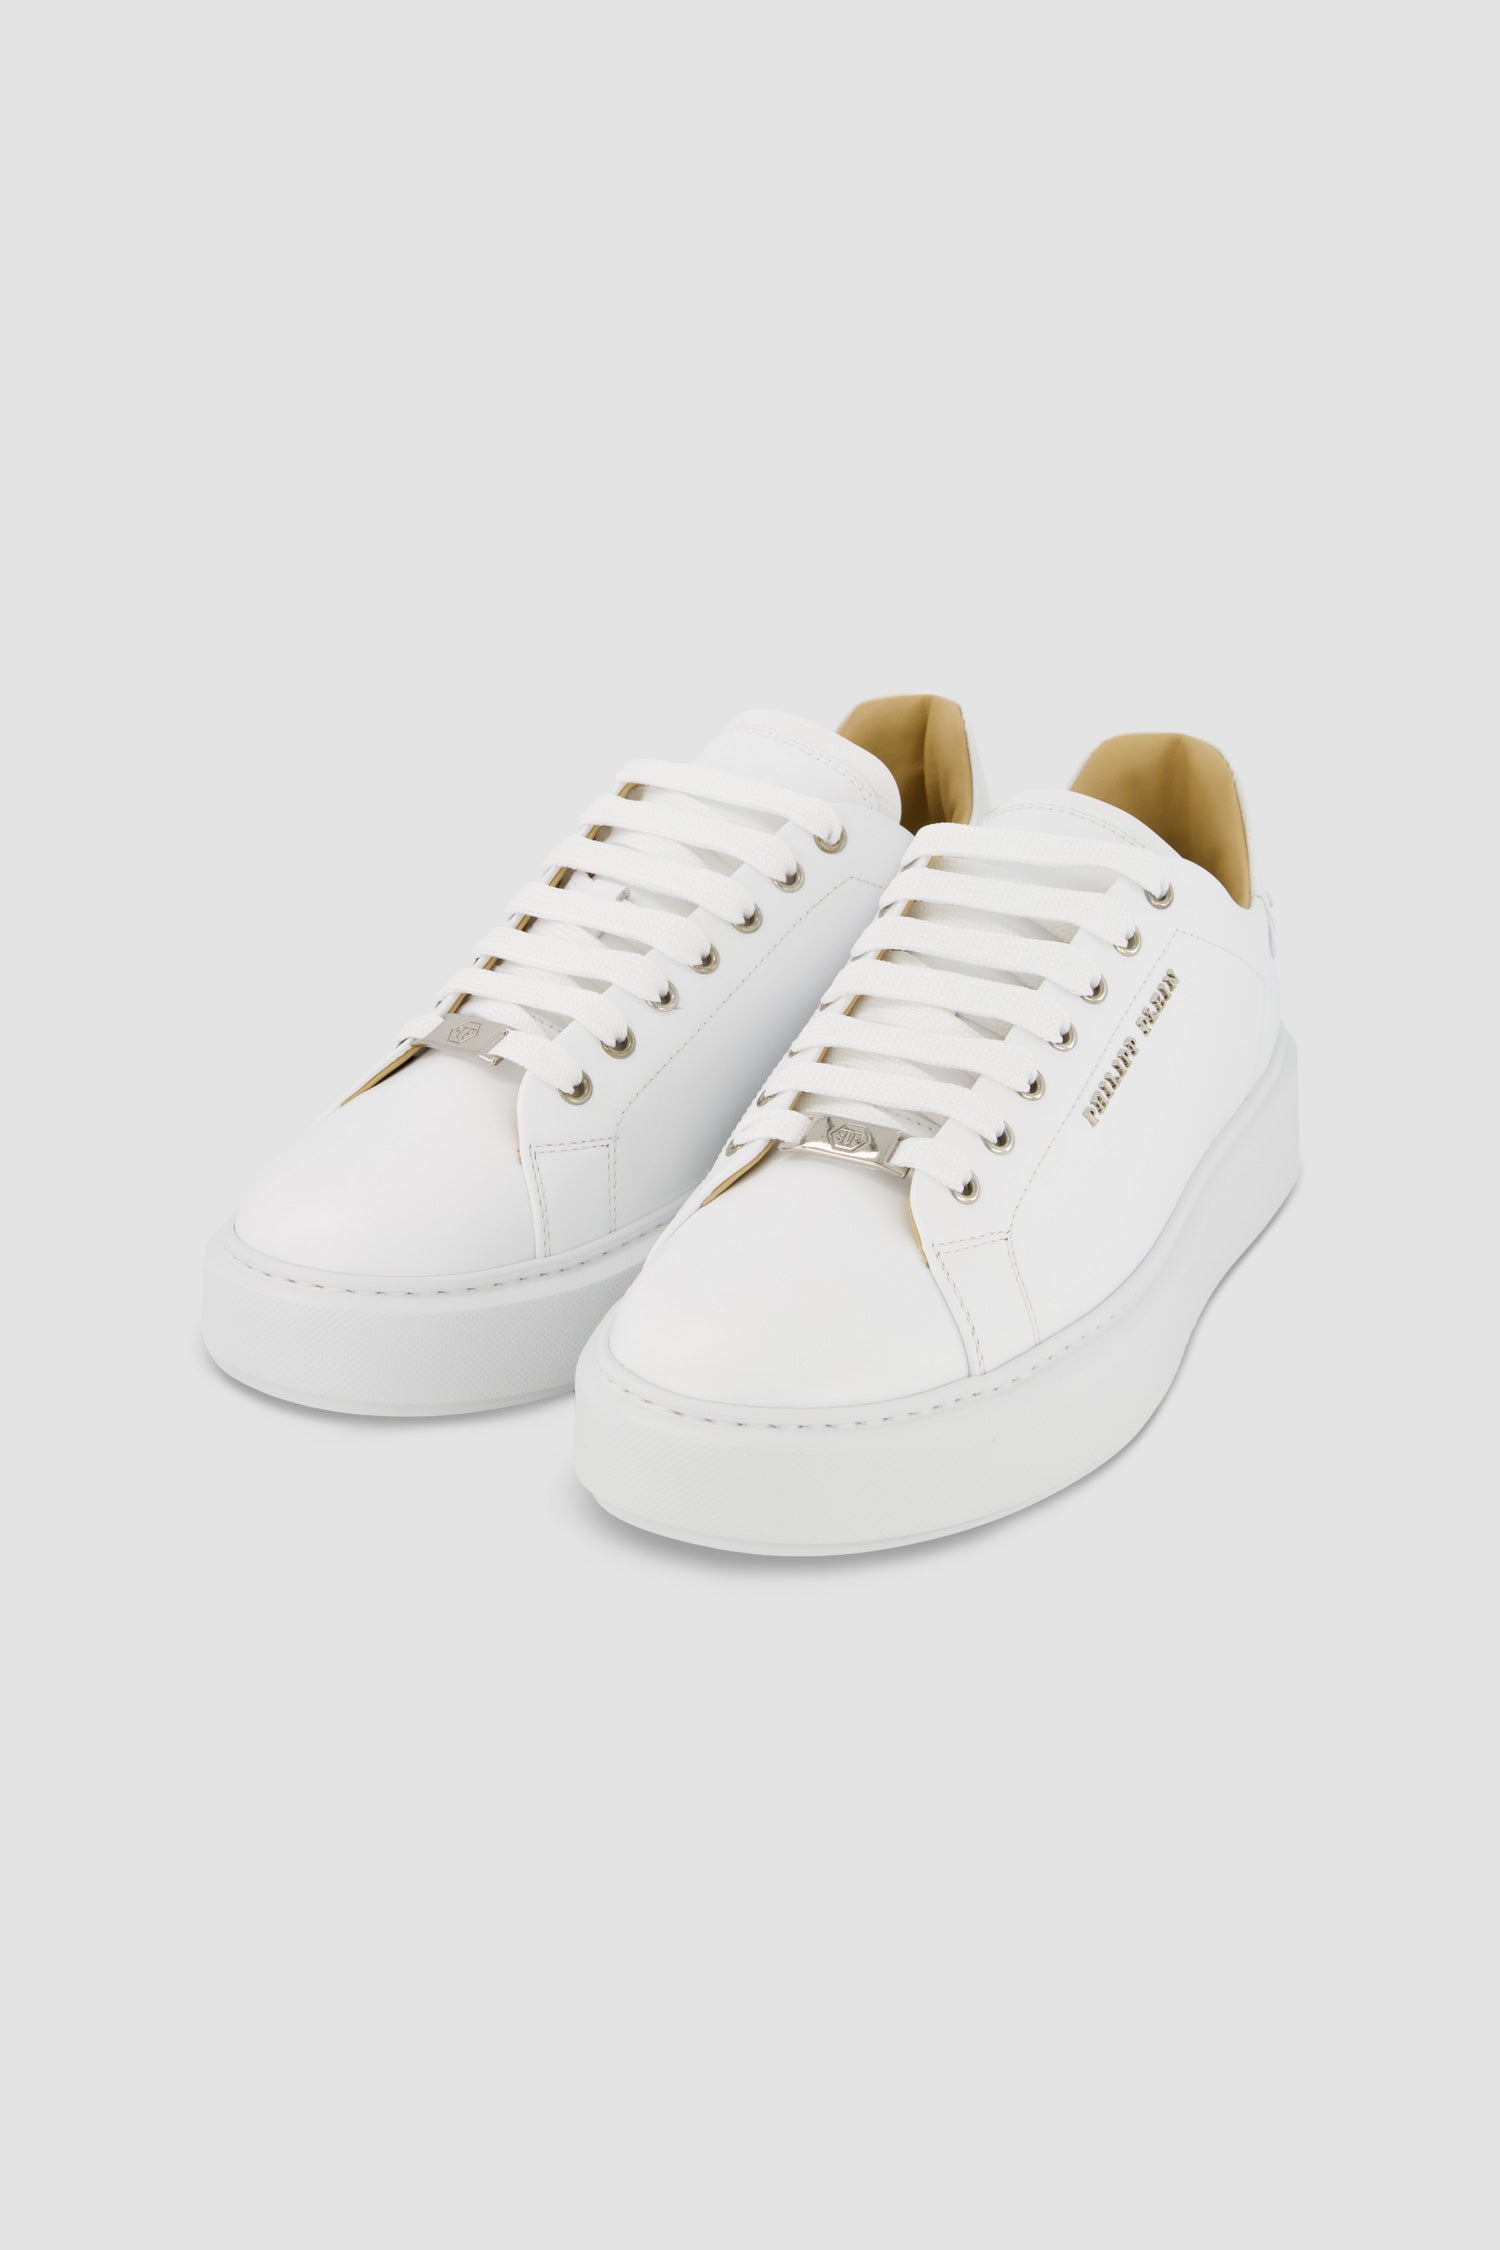 Philipp Plein White Leather Lo-Top Hexagon Sneakers